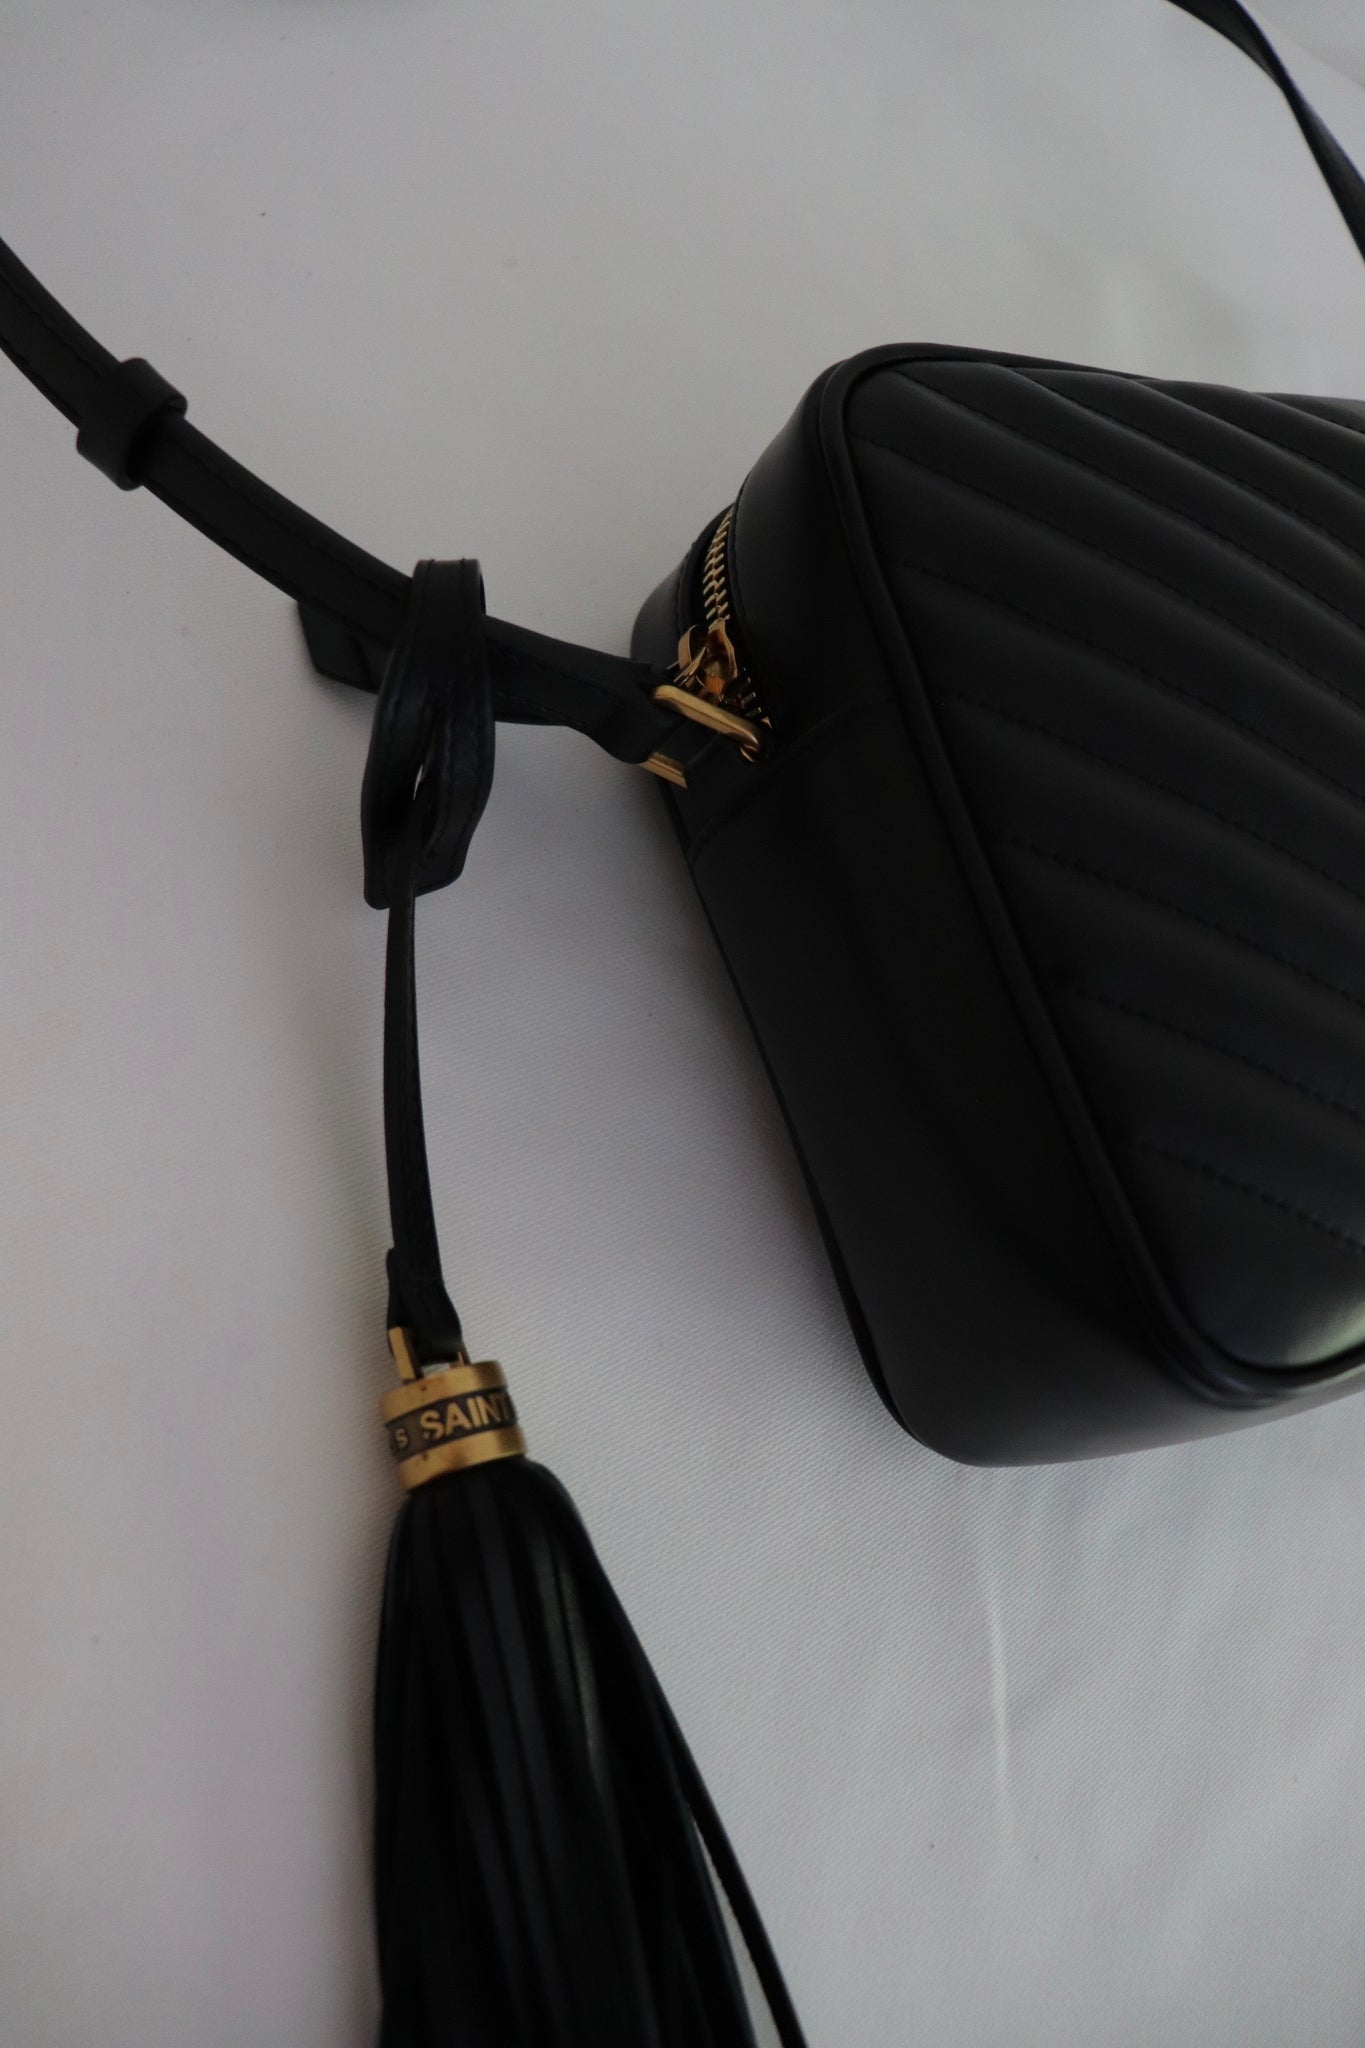 Shop authentic Saint Laurent Quilted Lou Camera Bag at revogue